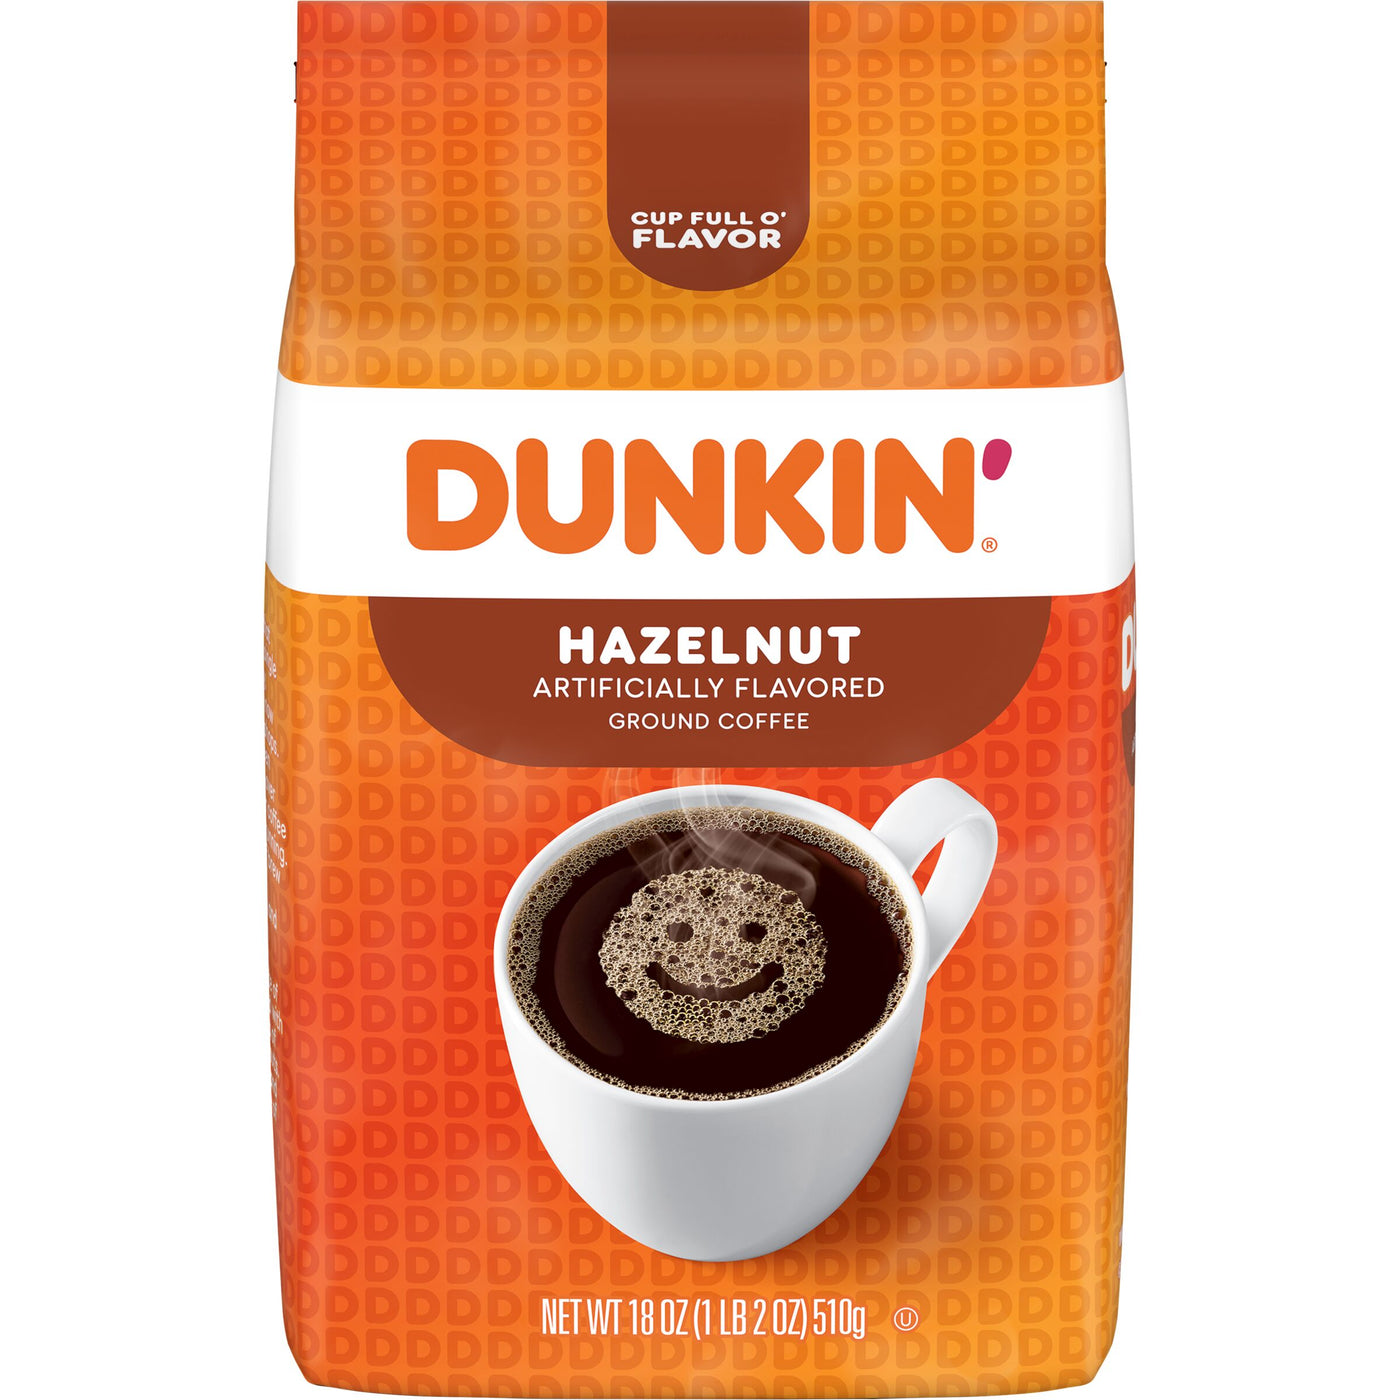 Dunkin' Hazelnut Flavored Ground Coffee